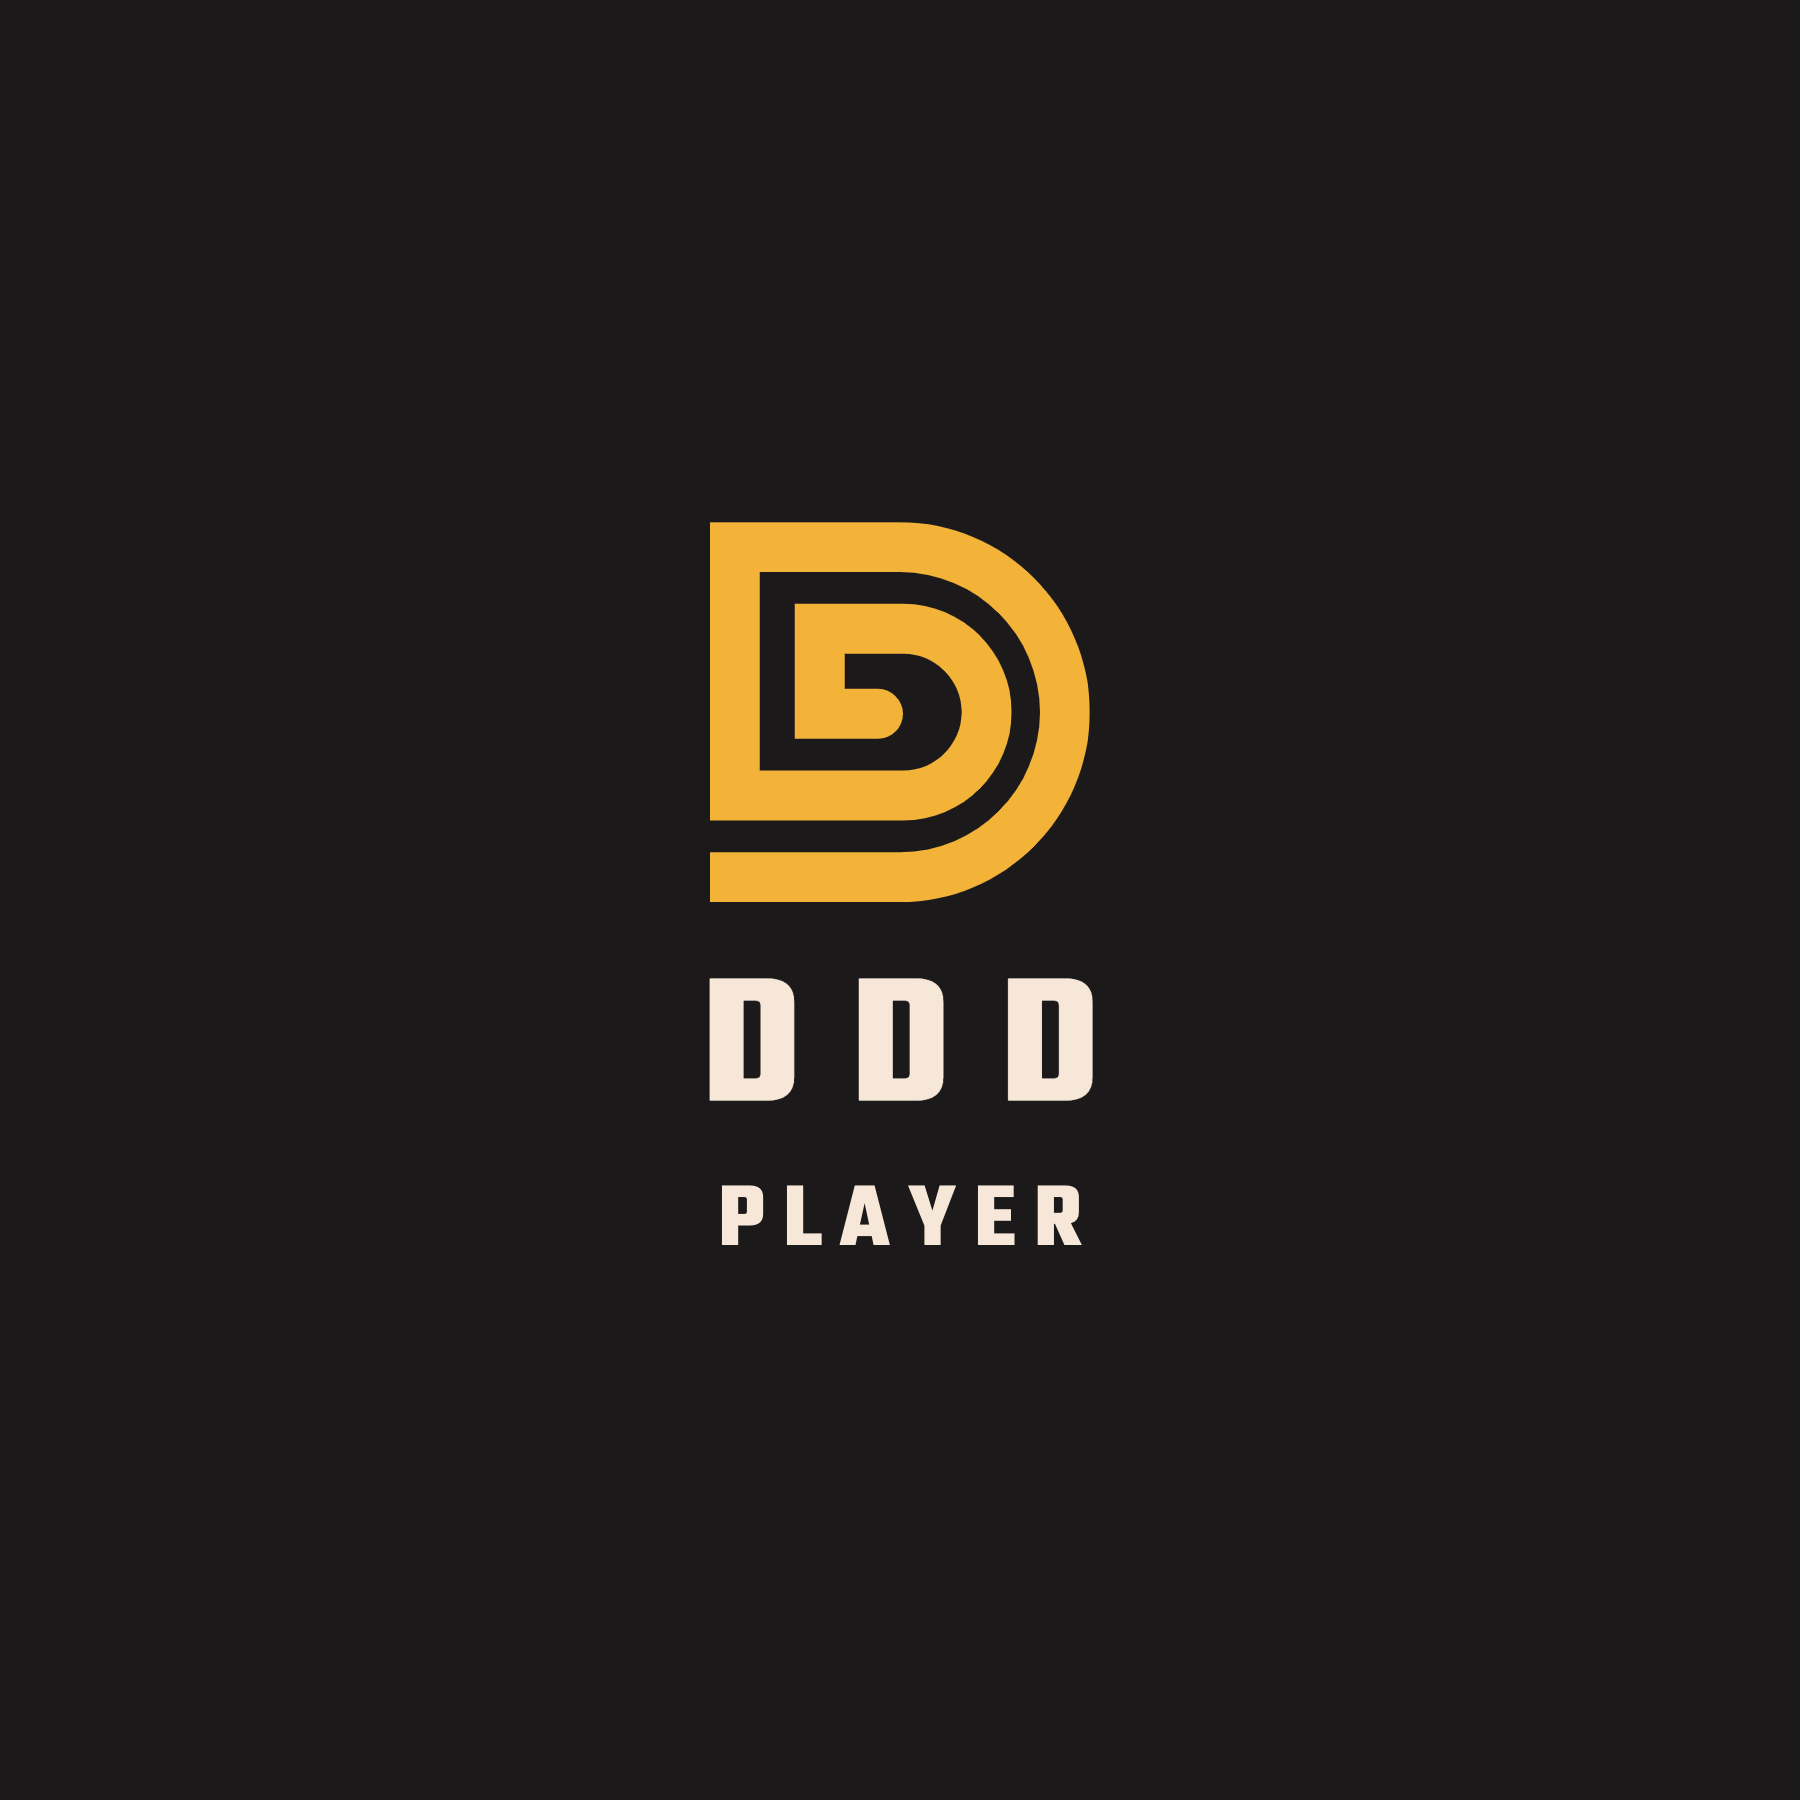 DDDPlayer